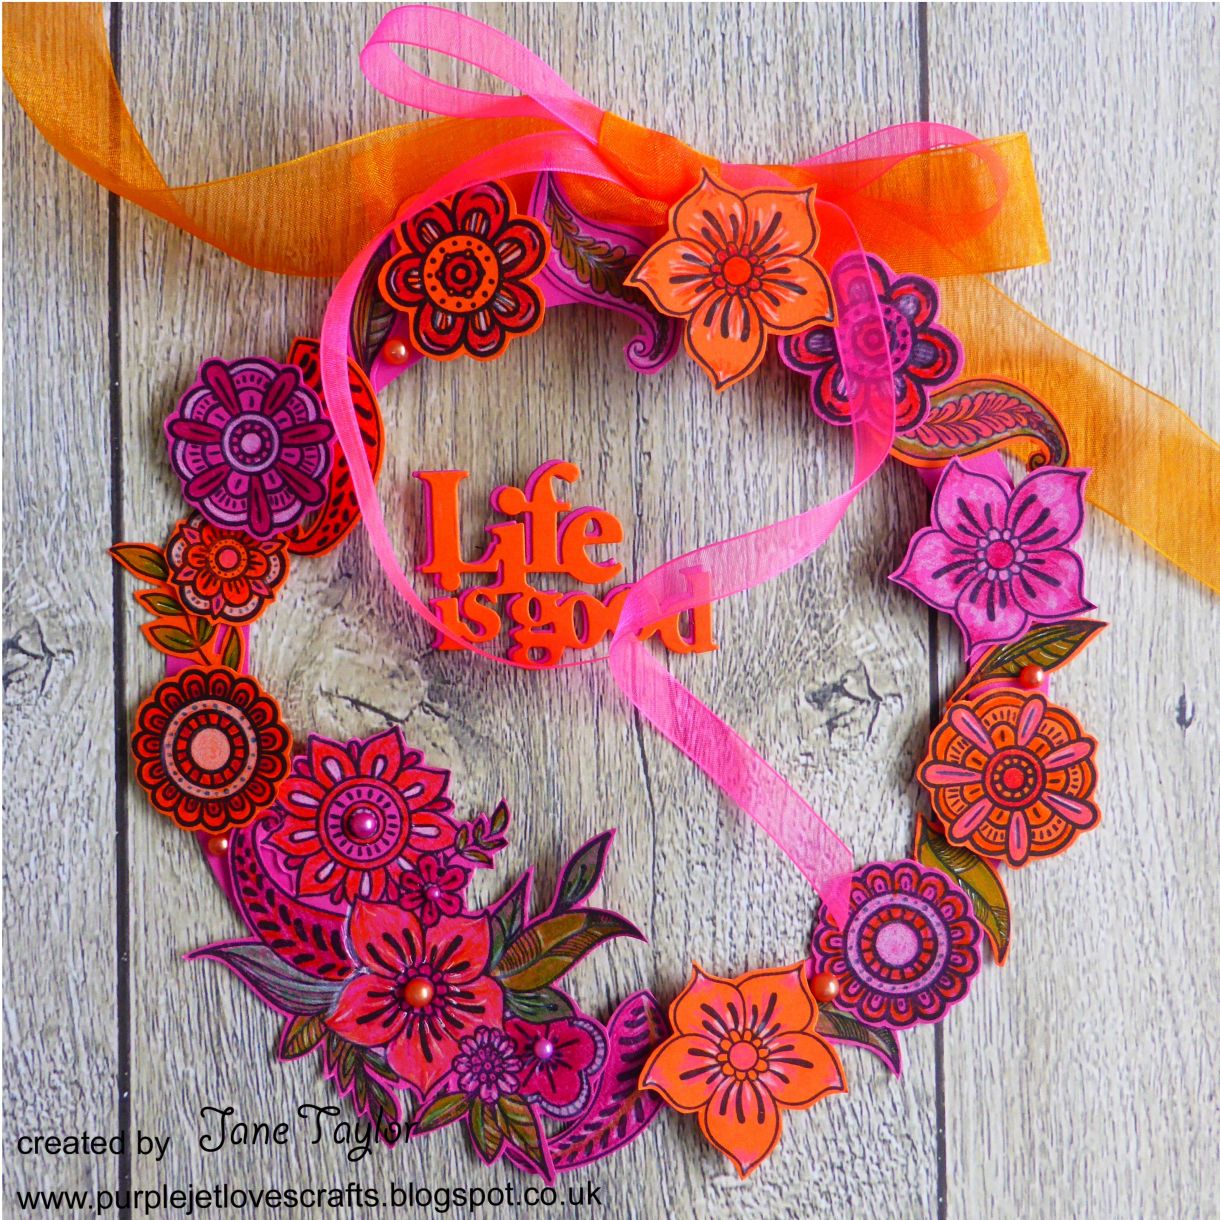 Jane Orange Pink Wreath 4